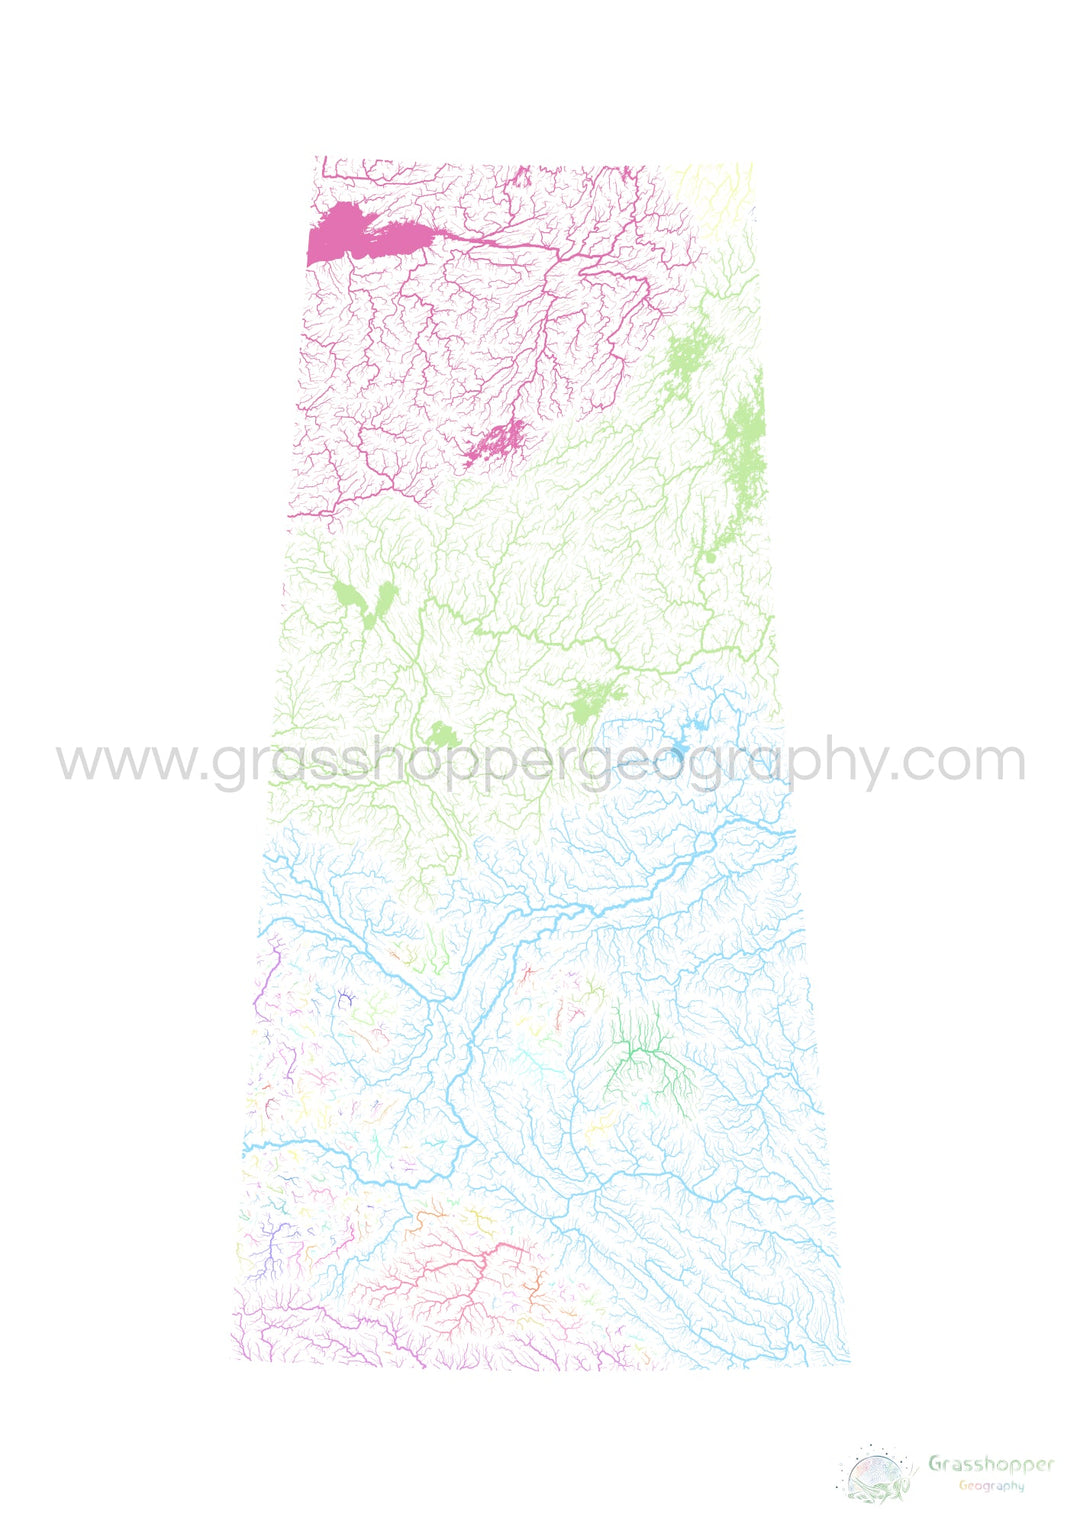 Saskatchewan - Carte du bassin fluvial, pastel sur blanc - Tirage d'art